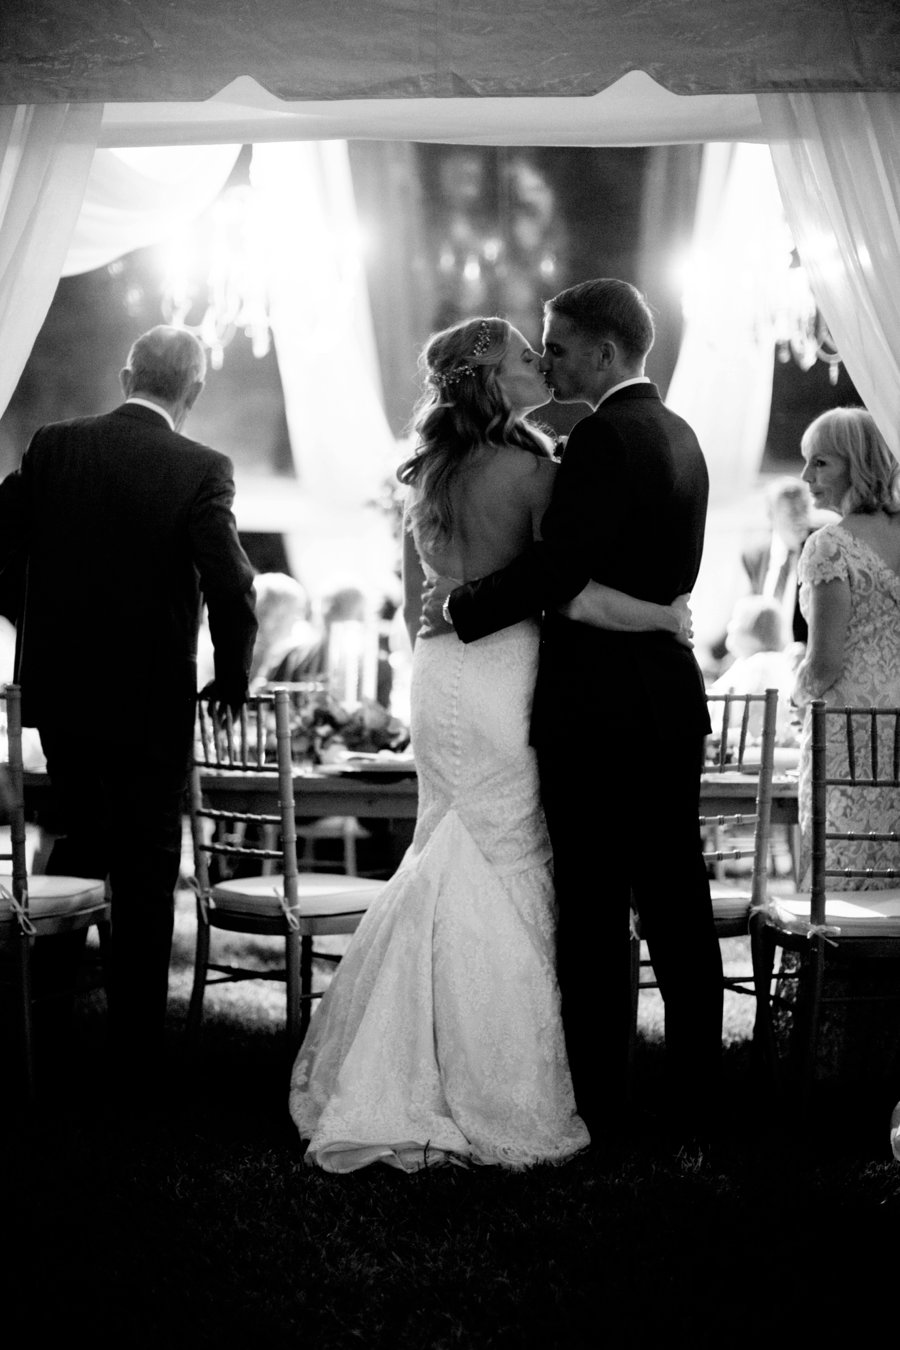 A Classic Blue, Green & White Texas Wedding via TheELD.com